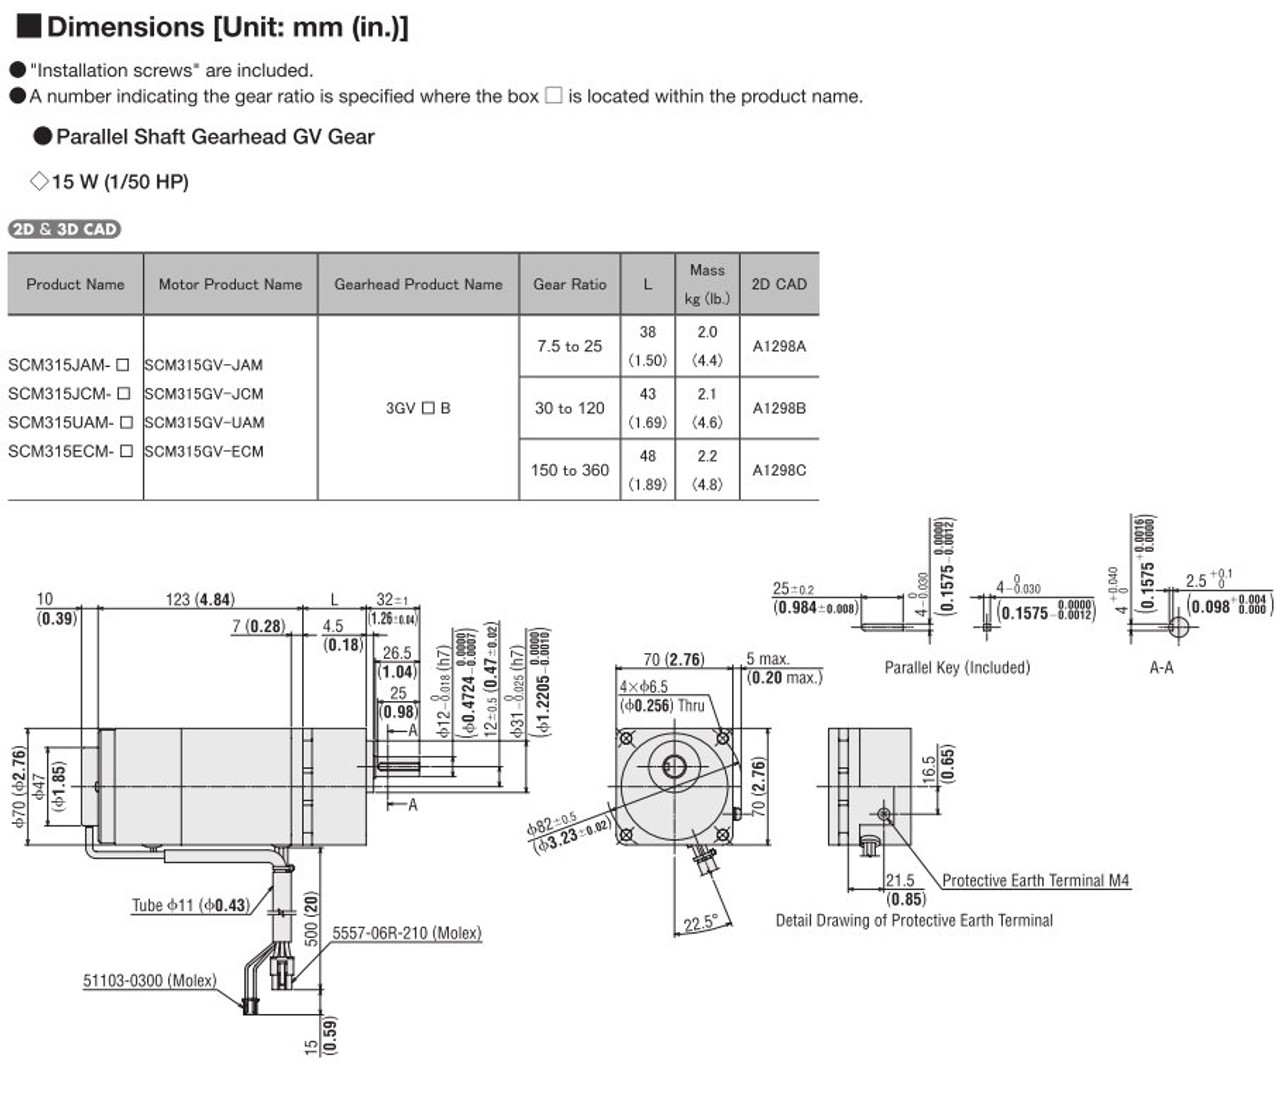 SCM315ECM-9 - Dimensions